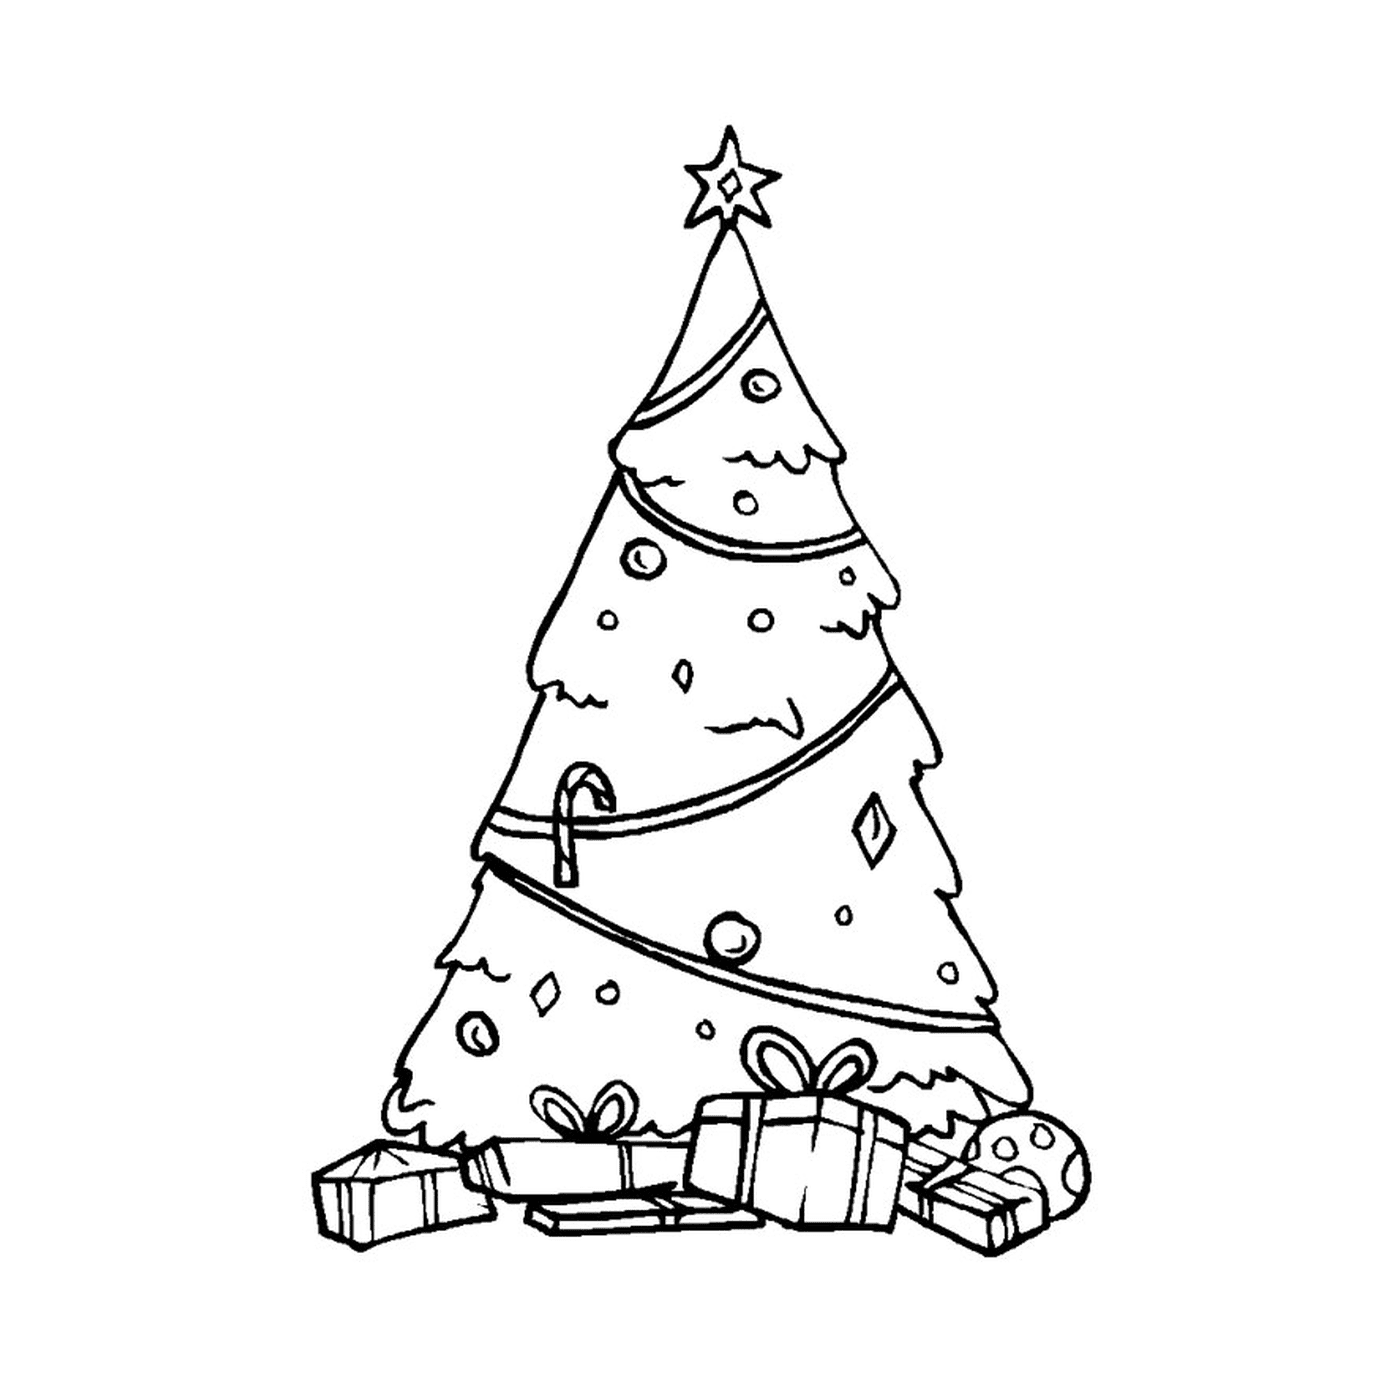  Традиционная рождественская елка 